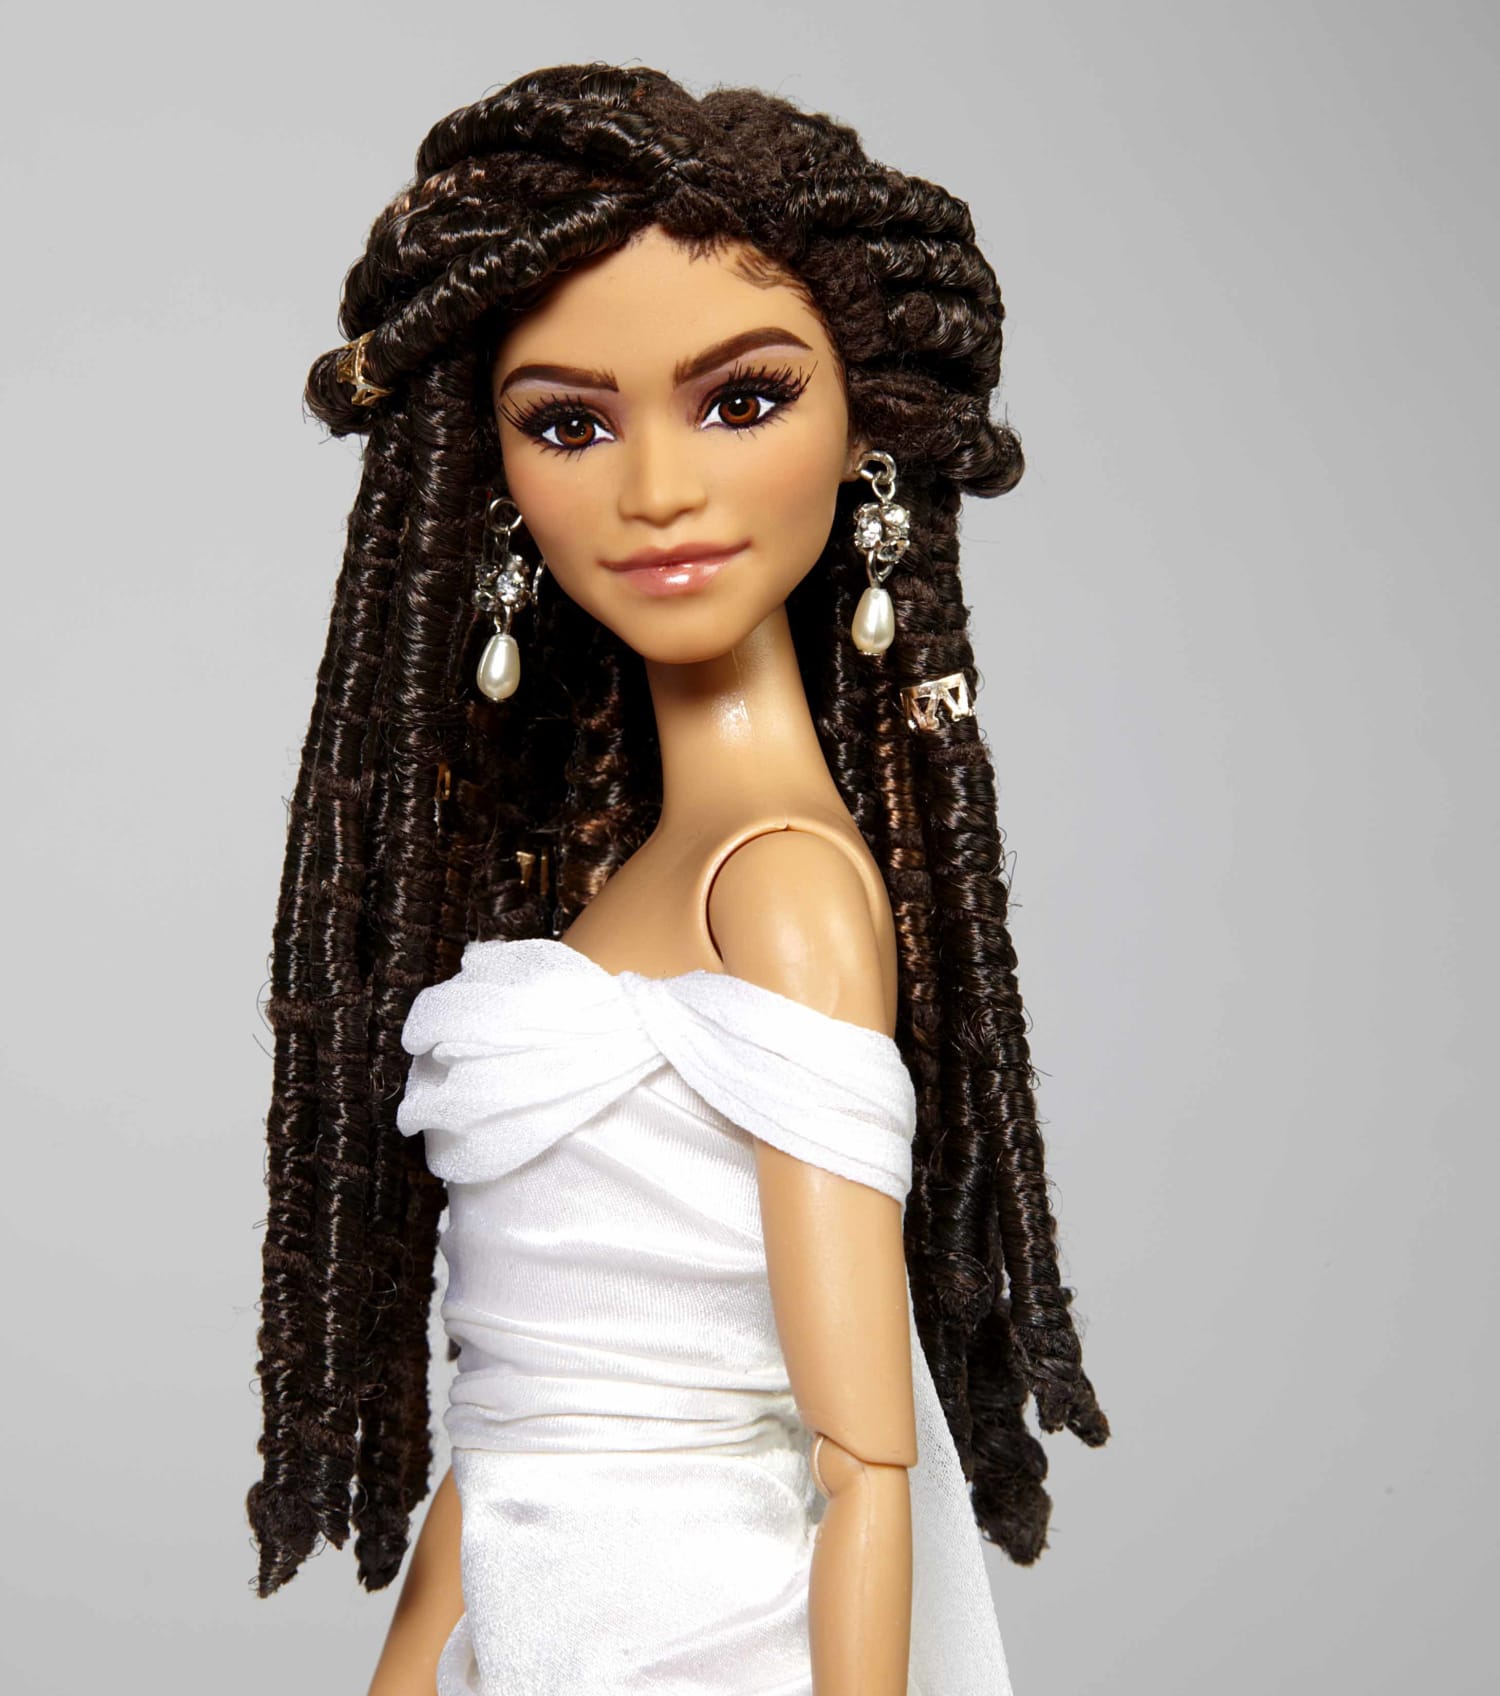 Wreedheid Vegen Alarmerend Zendaya Barbie honors star for 'standing up for her culture'